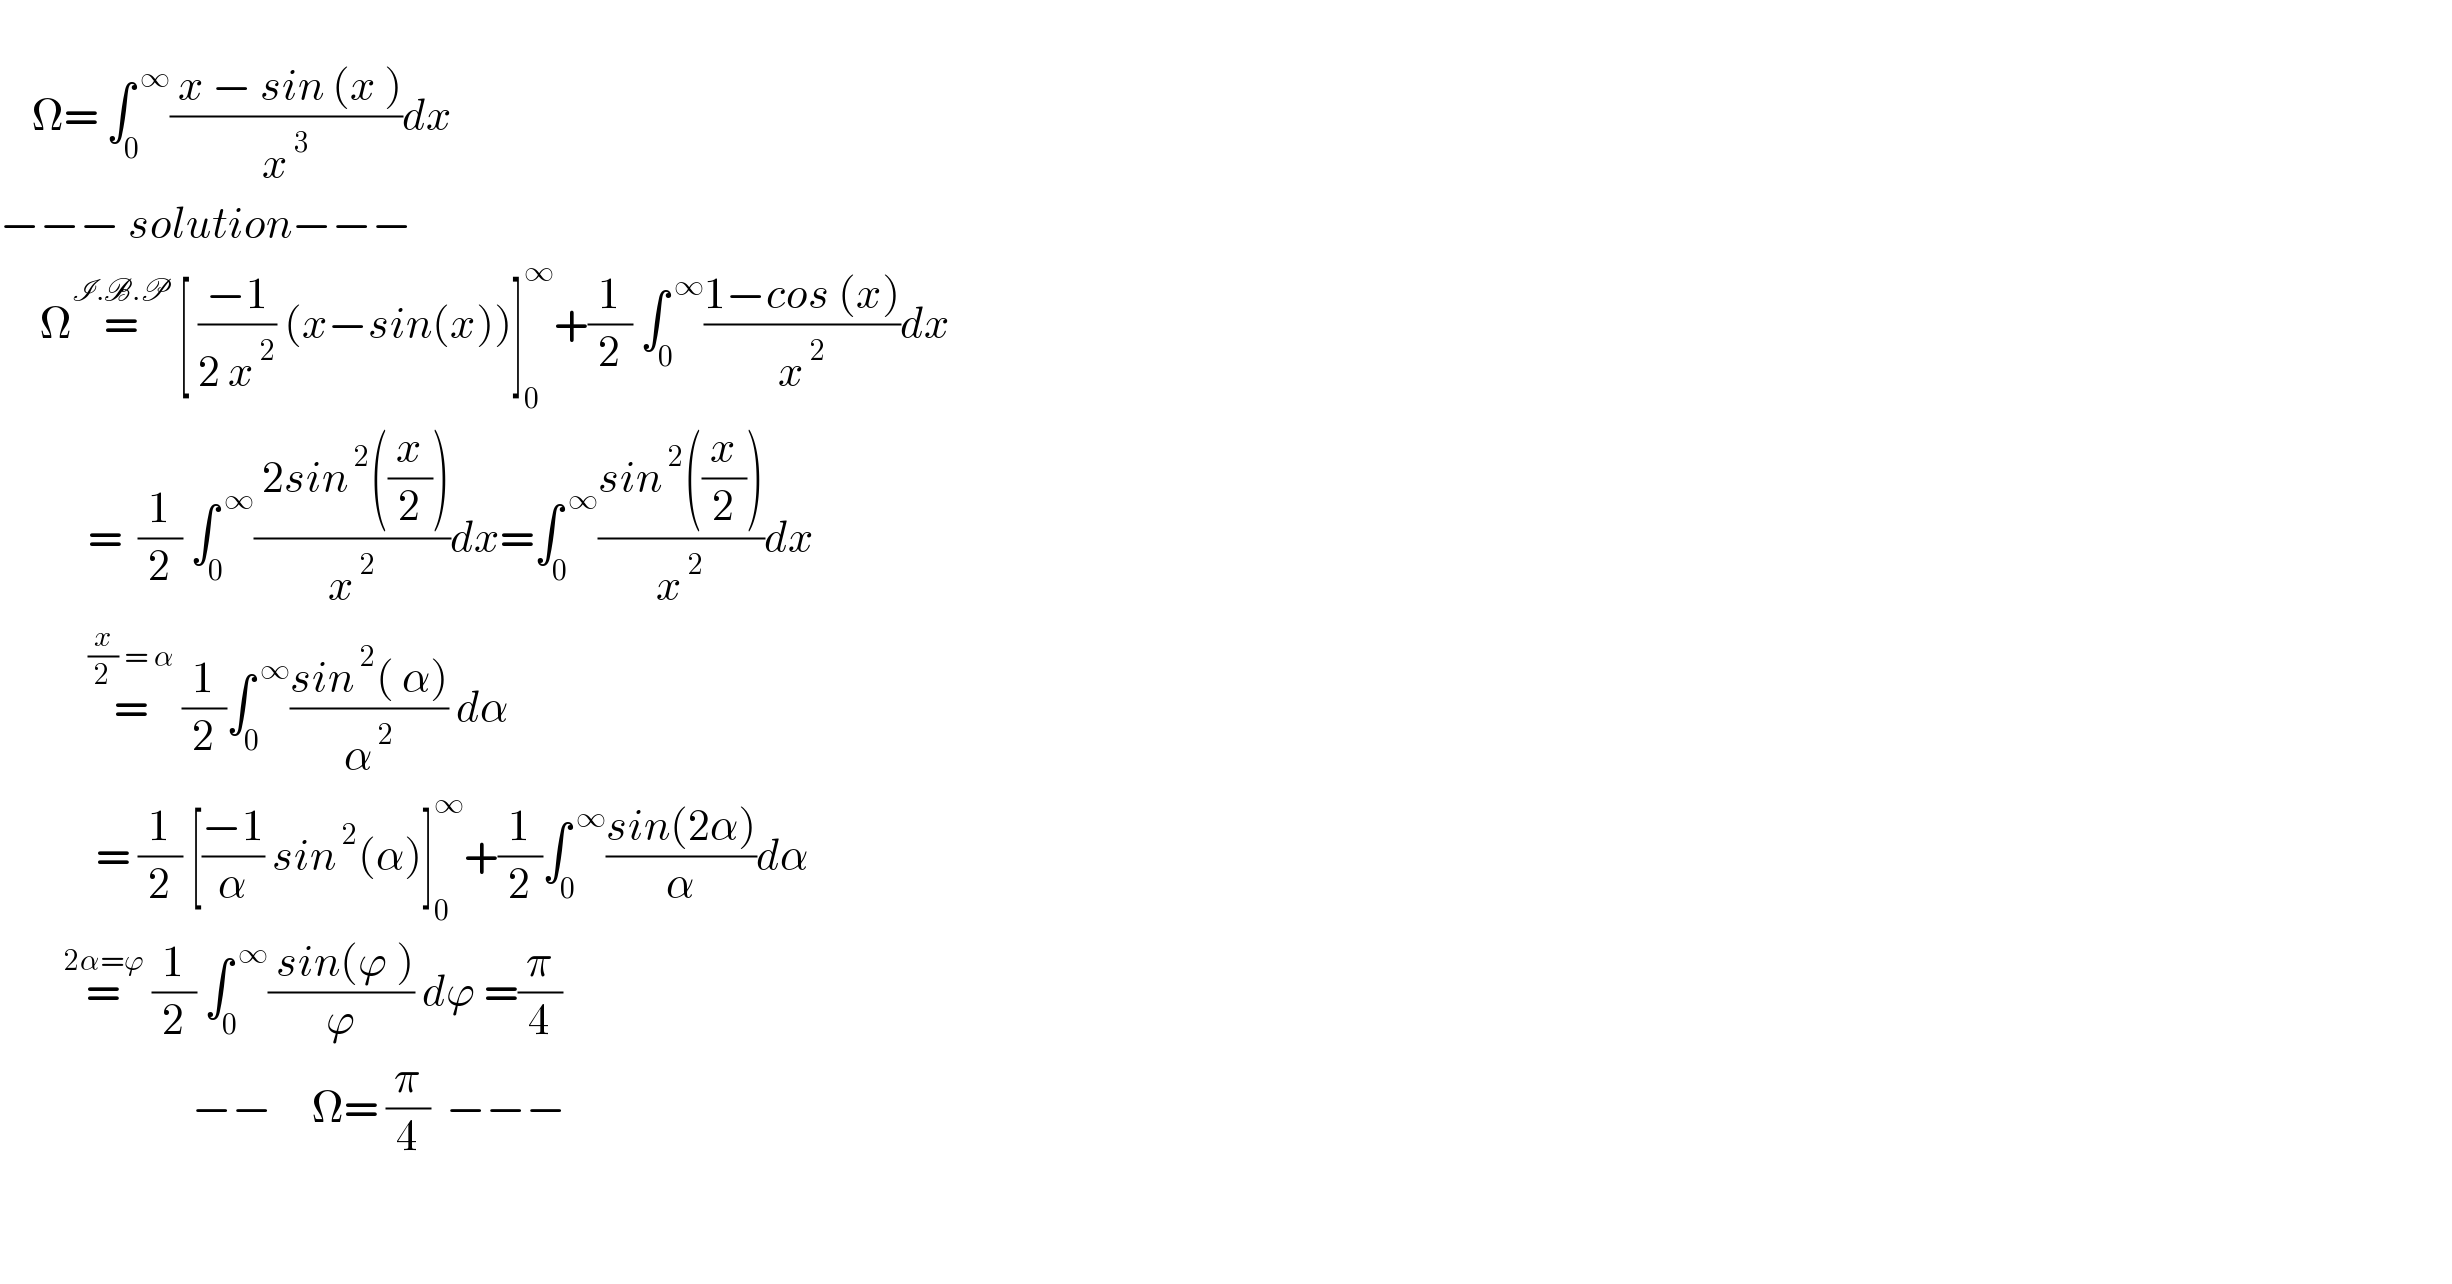       Ω= ∫_0 ^( ∞) (( x − sin (x ))/x^( 3) )dx  −−− solution−−−       Ω=^(I.B.P)  [ ((−1)/(2 x^( 2) )) (x−sin(x))]_0 ^∞ +(1/2) ∫_0 ^( ∞) ((1−cos (x))/x^( 2) )dx             =  (1/2) ∫_0 ^( ∞) (( 2sin^( 2) ((x/2)))/x^( 2) )dx=∫_0 ^( ∞) ((sin^( 2) ((x/2)))/x^( 2) )dx             =^((x/2) = α)  (1/2)∫_0 ^( ∞) ((sin^( 2) ( α))/α^( 2) ) dα               = (1/2) [((−1)/α) sin^( 2) (α)]_0 ^∞ +(1/2)∫_0 ^( ∞) ((sin(2α))/α)dα          =^(2α=ϕ)  (1/2) ∫_0 ^( ∞) (( sin(ϕ ))/ϕ) dϕ =(π/4)                          −−     Ω= (π/4)  −−−      